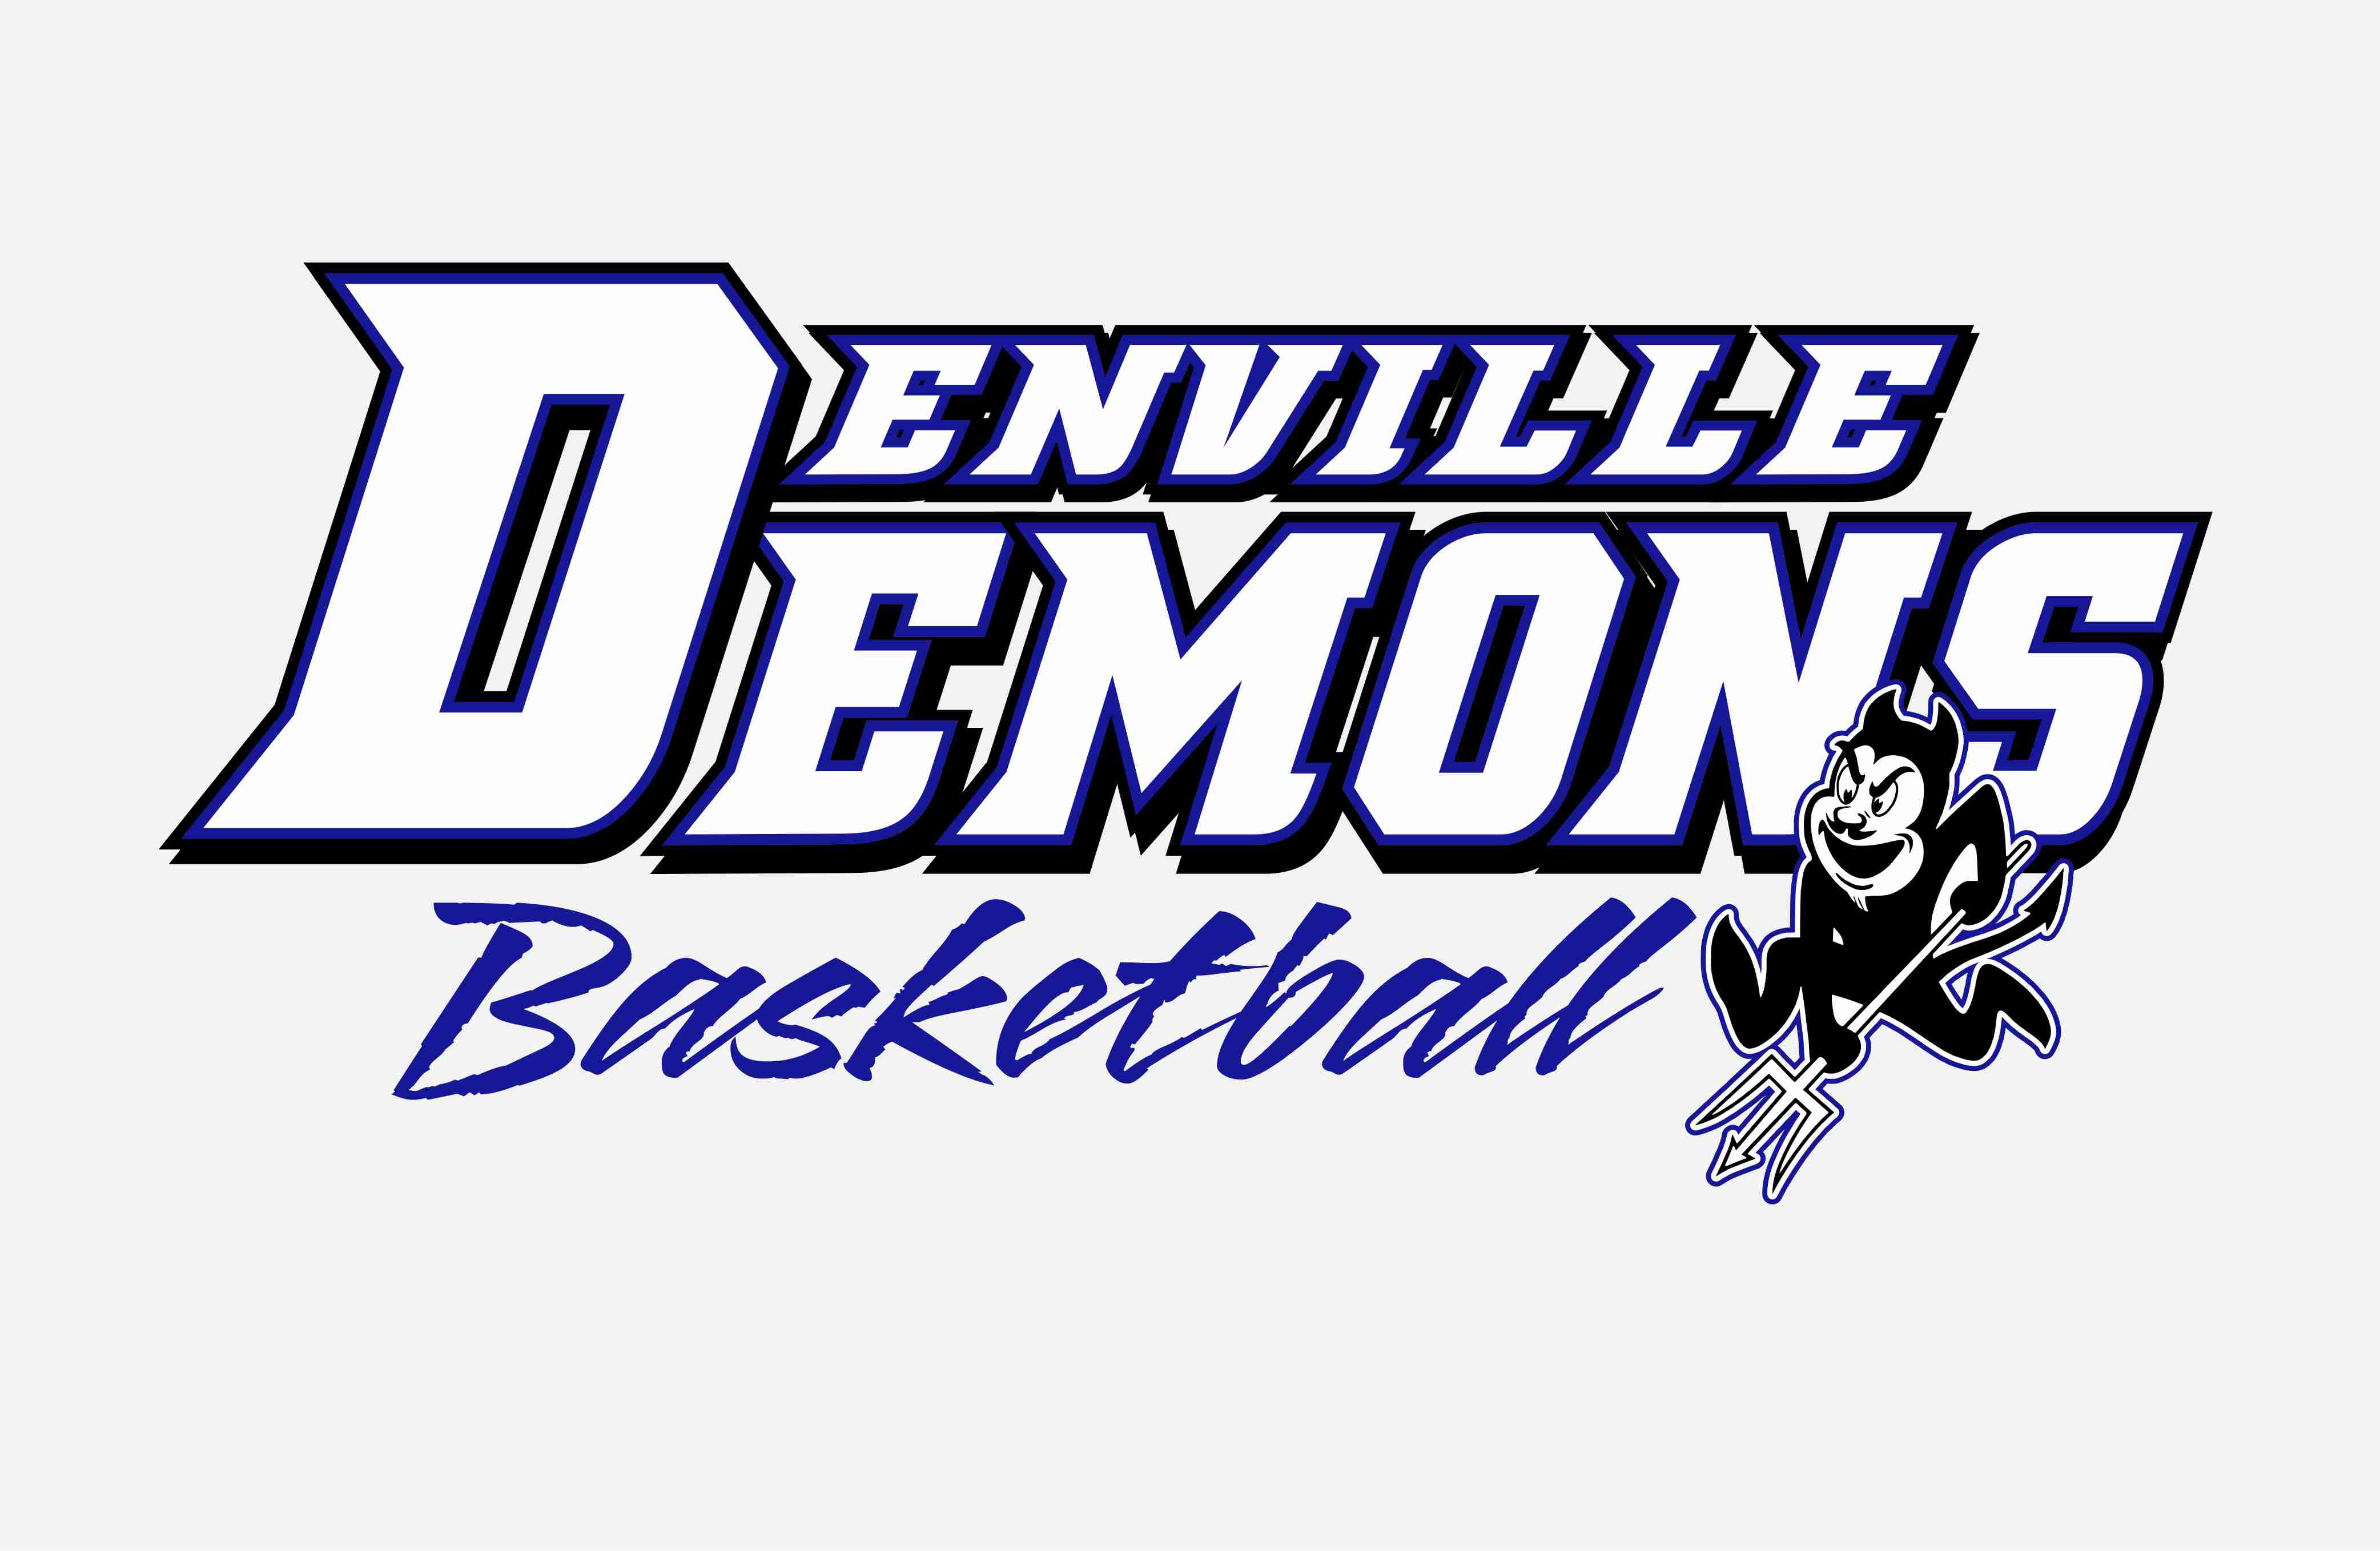 Denville Demons